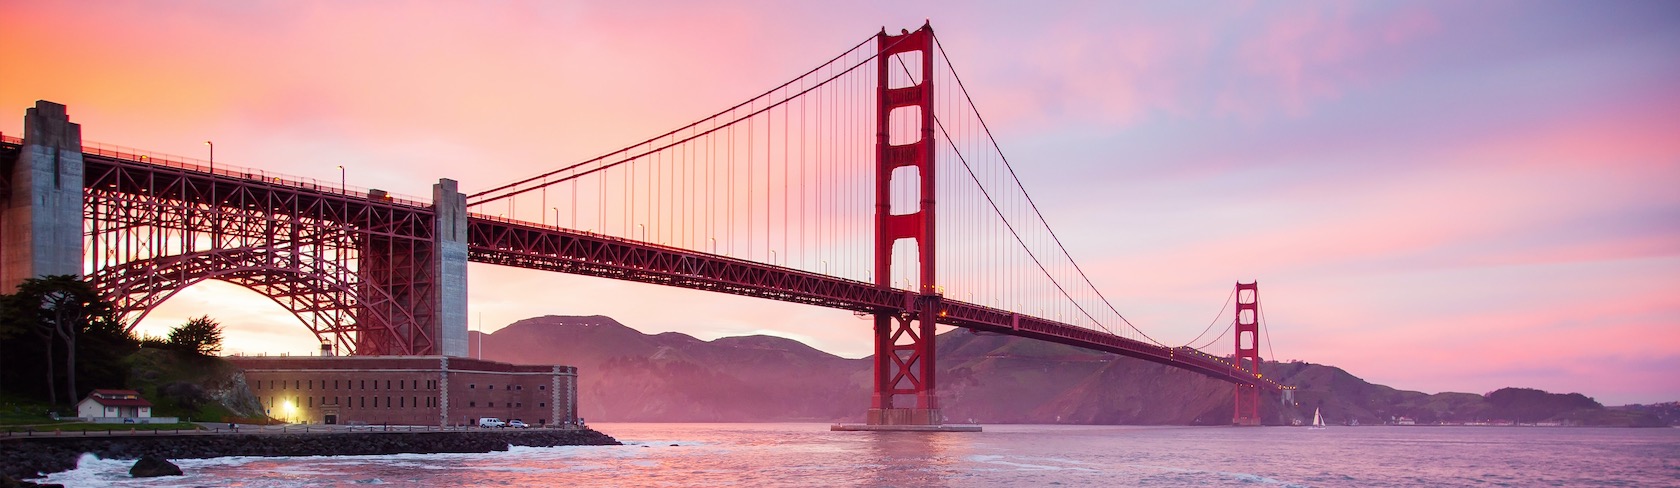 El puente Golden Gate de San Francisco al atardecer